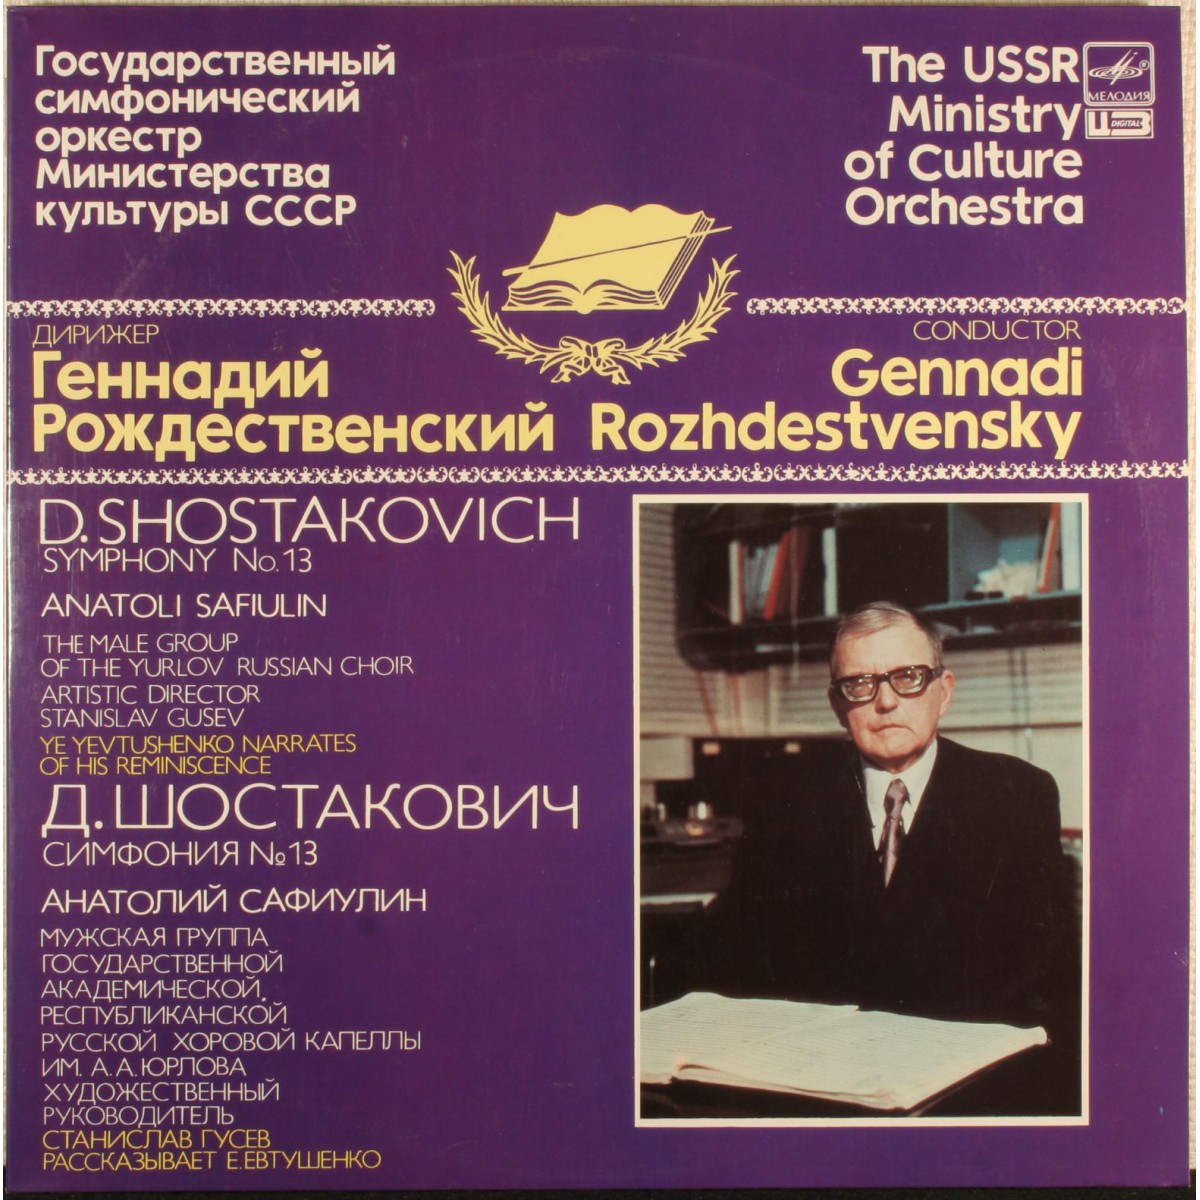 Д. ШОСТАКОВИЧ (1906-1975): Симфония № 13 для солиста баса, хора басов и оркестра, си-бемоль минор, соч. 113